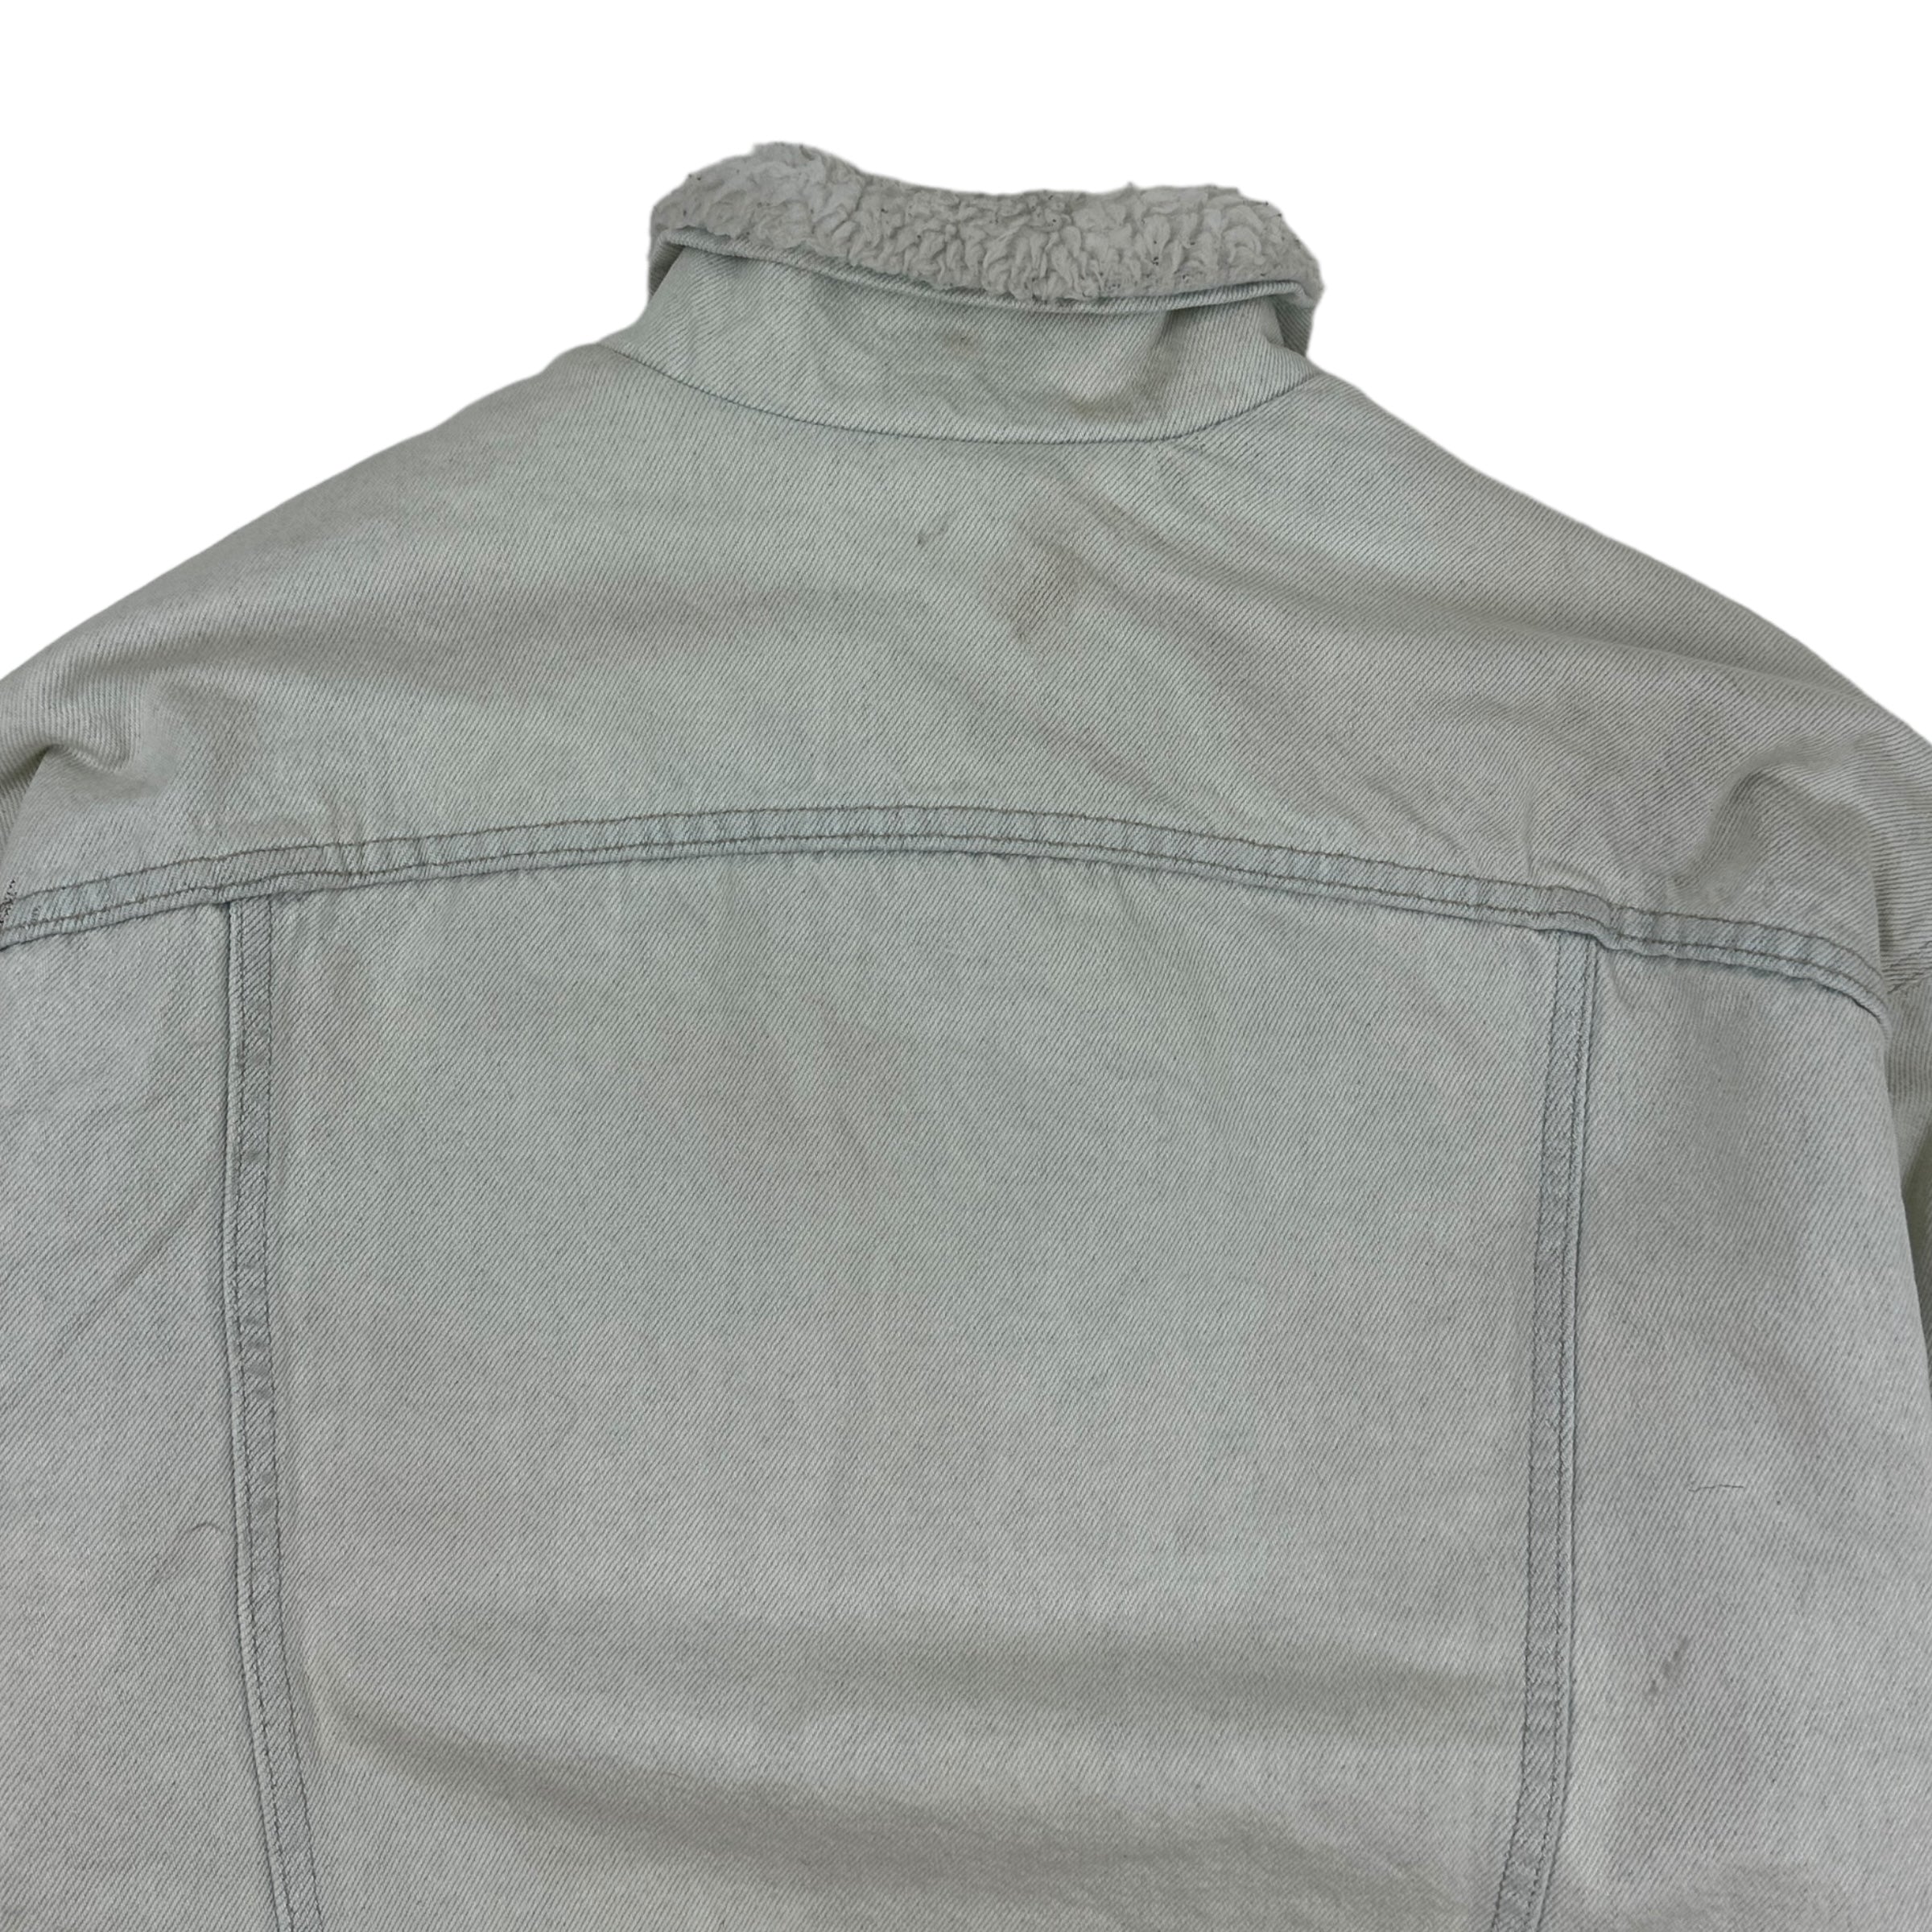 Vintage Levis Sherpa Lined Denim Jacket